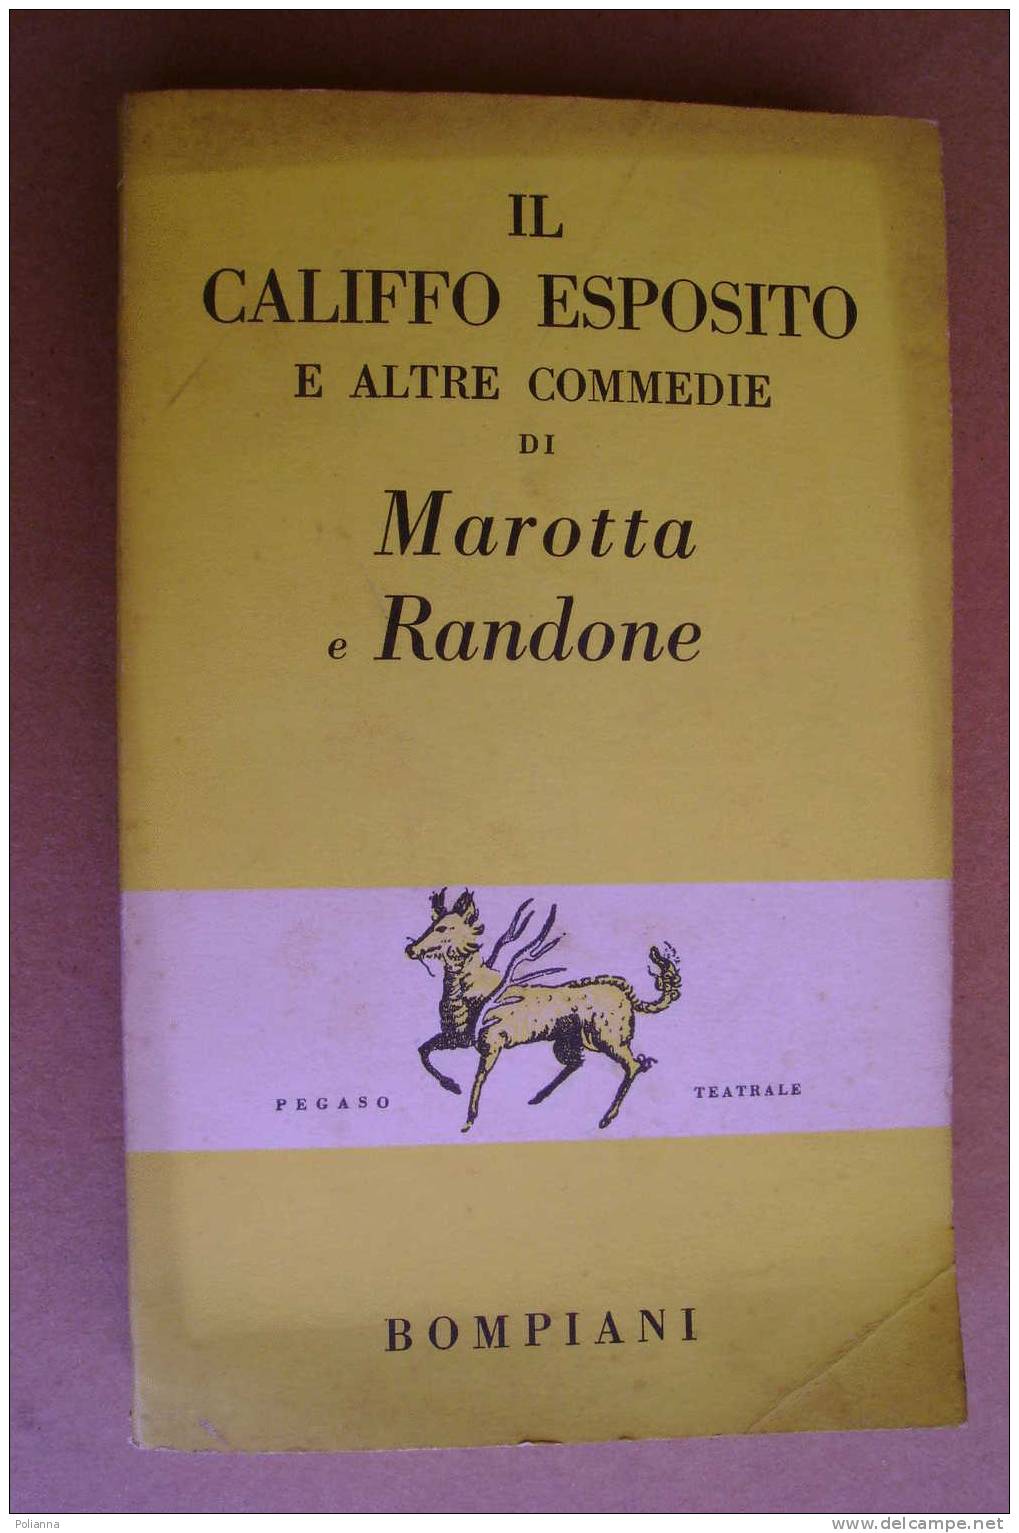 PAO/48 Marotta E Randone IL CALIFFO ESPOSITO Bompiani 1956 - Teatro